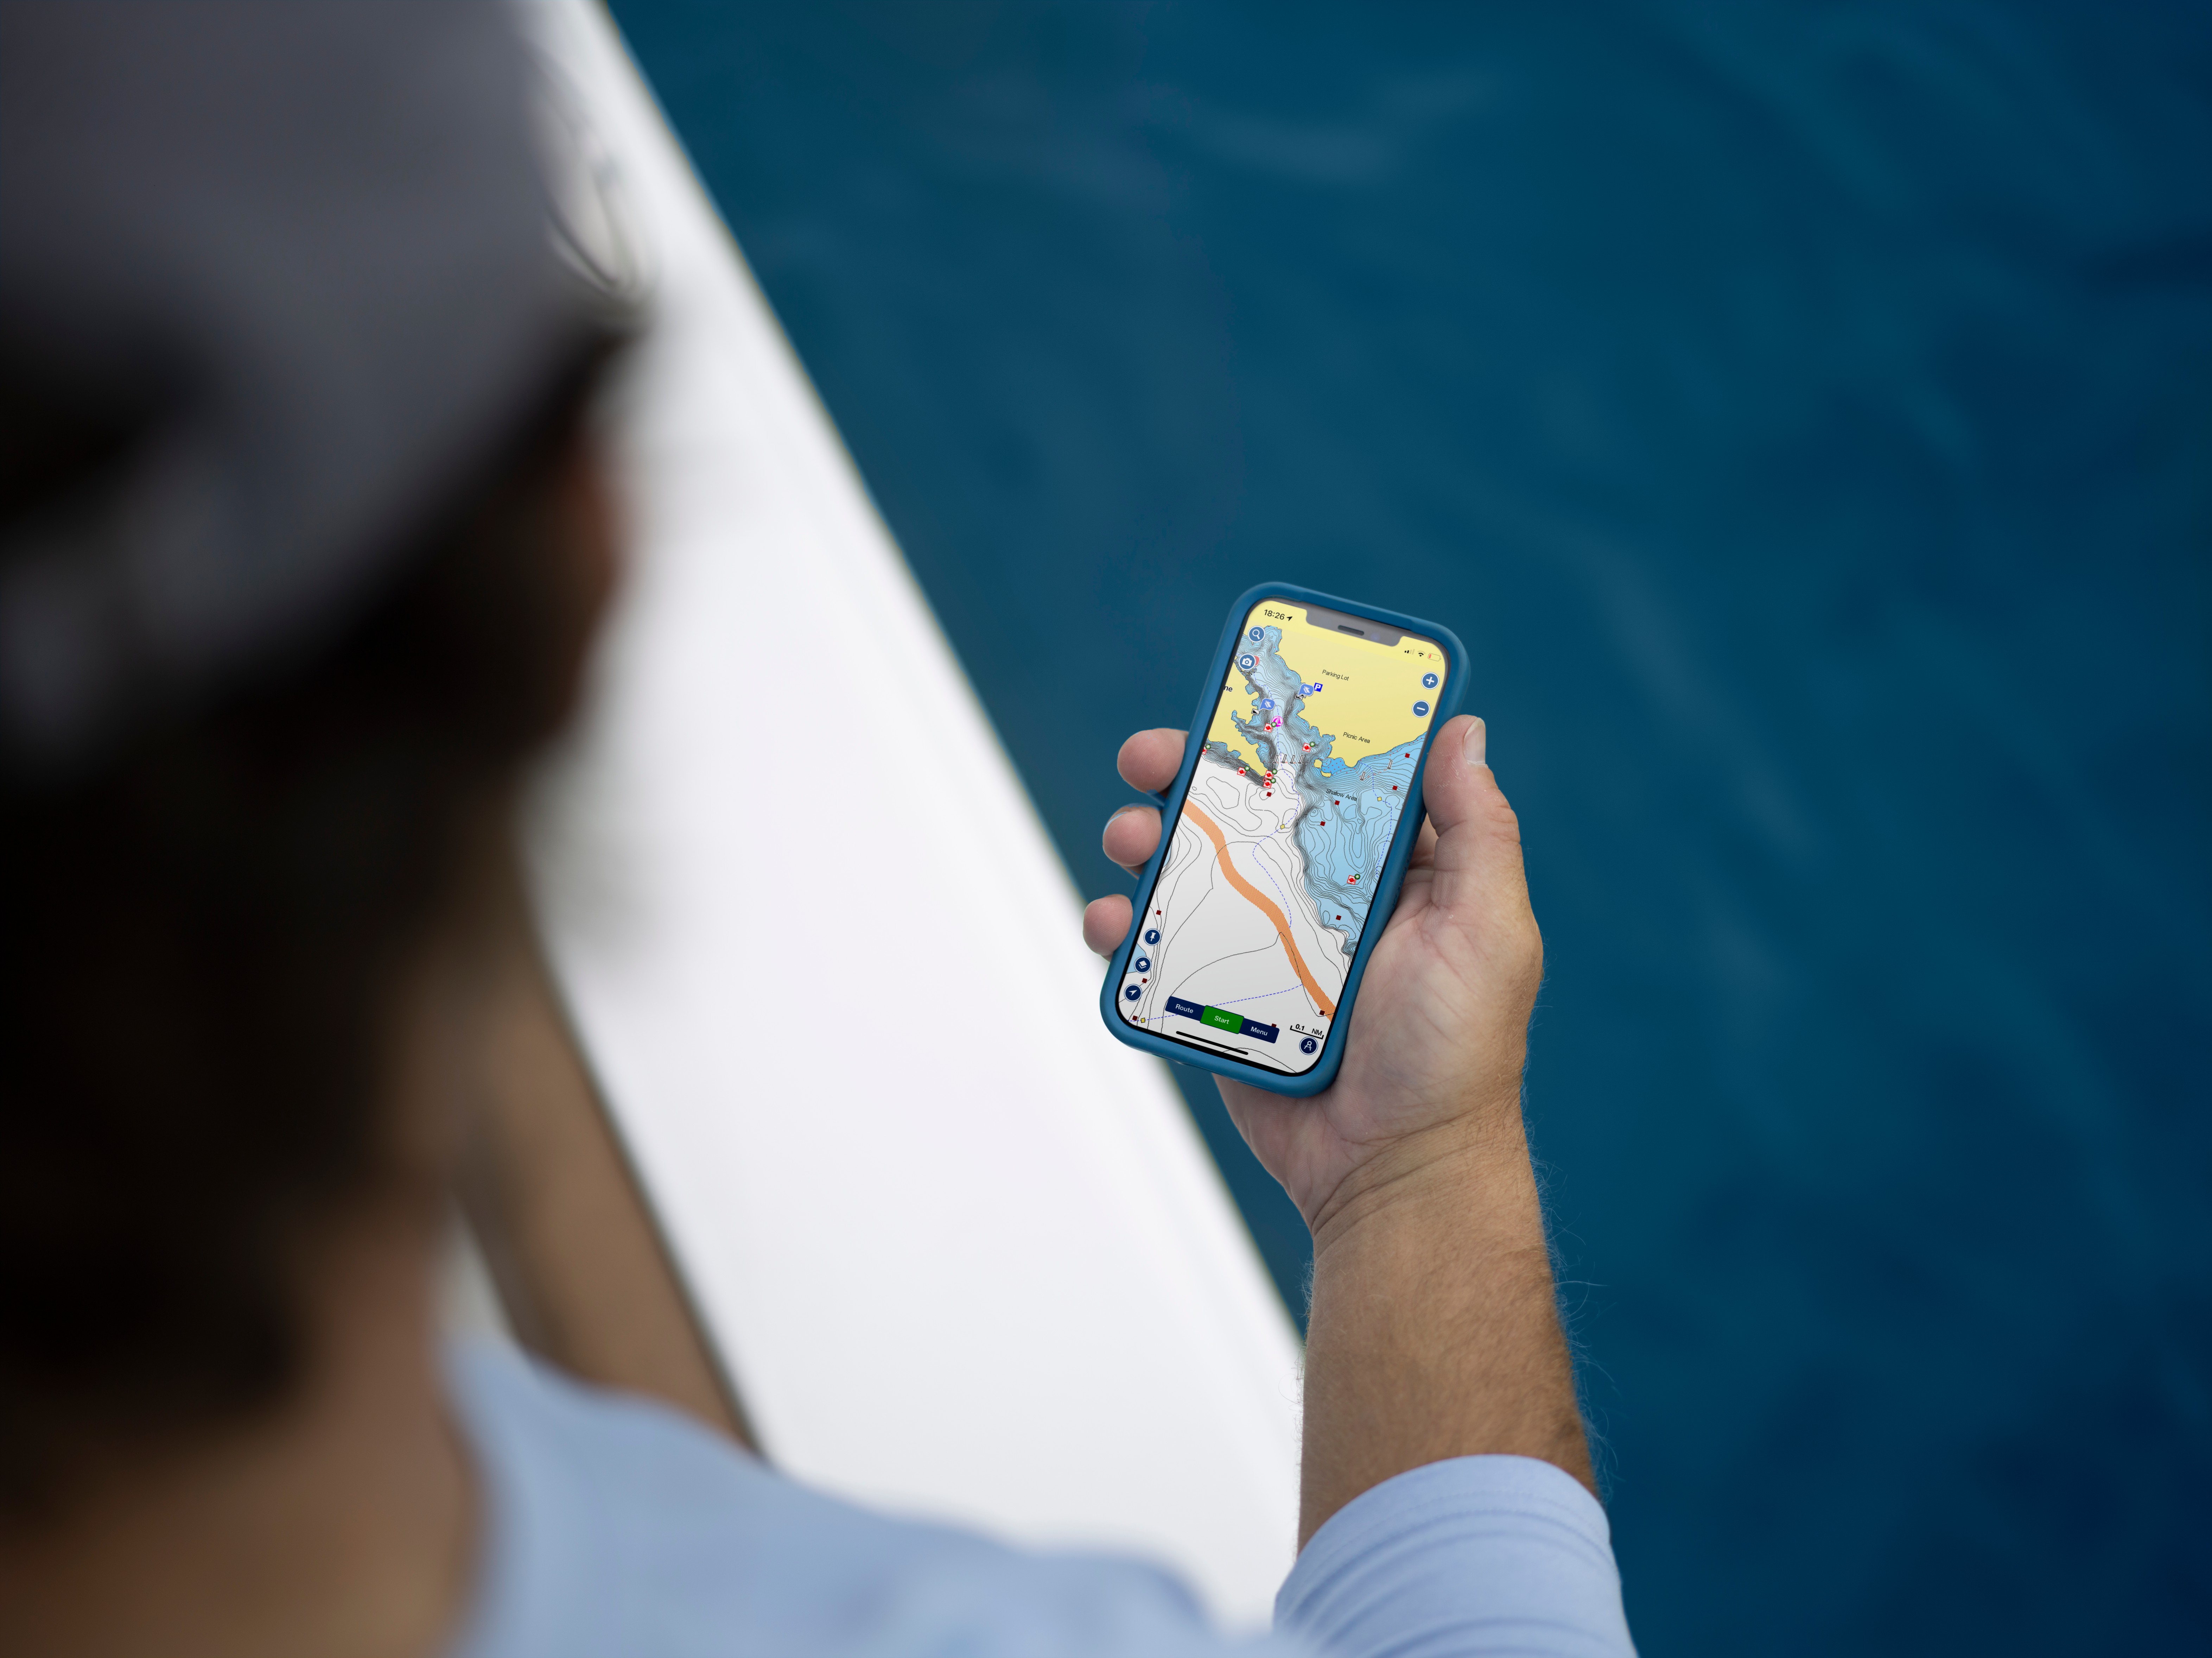 Notizie utili su Navionics: la rivista Boating mette in risalto le nuove funzioni dell'app Boating